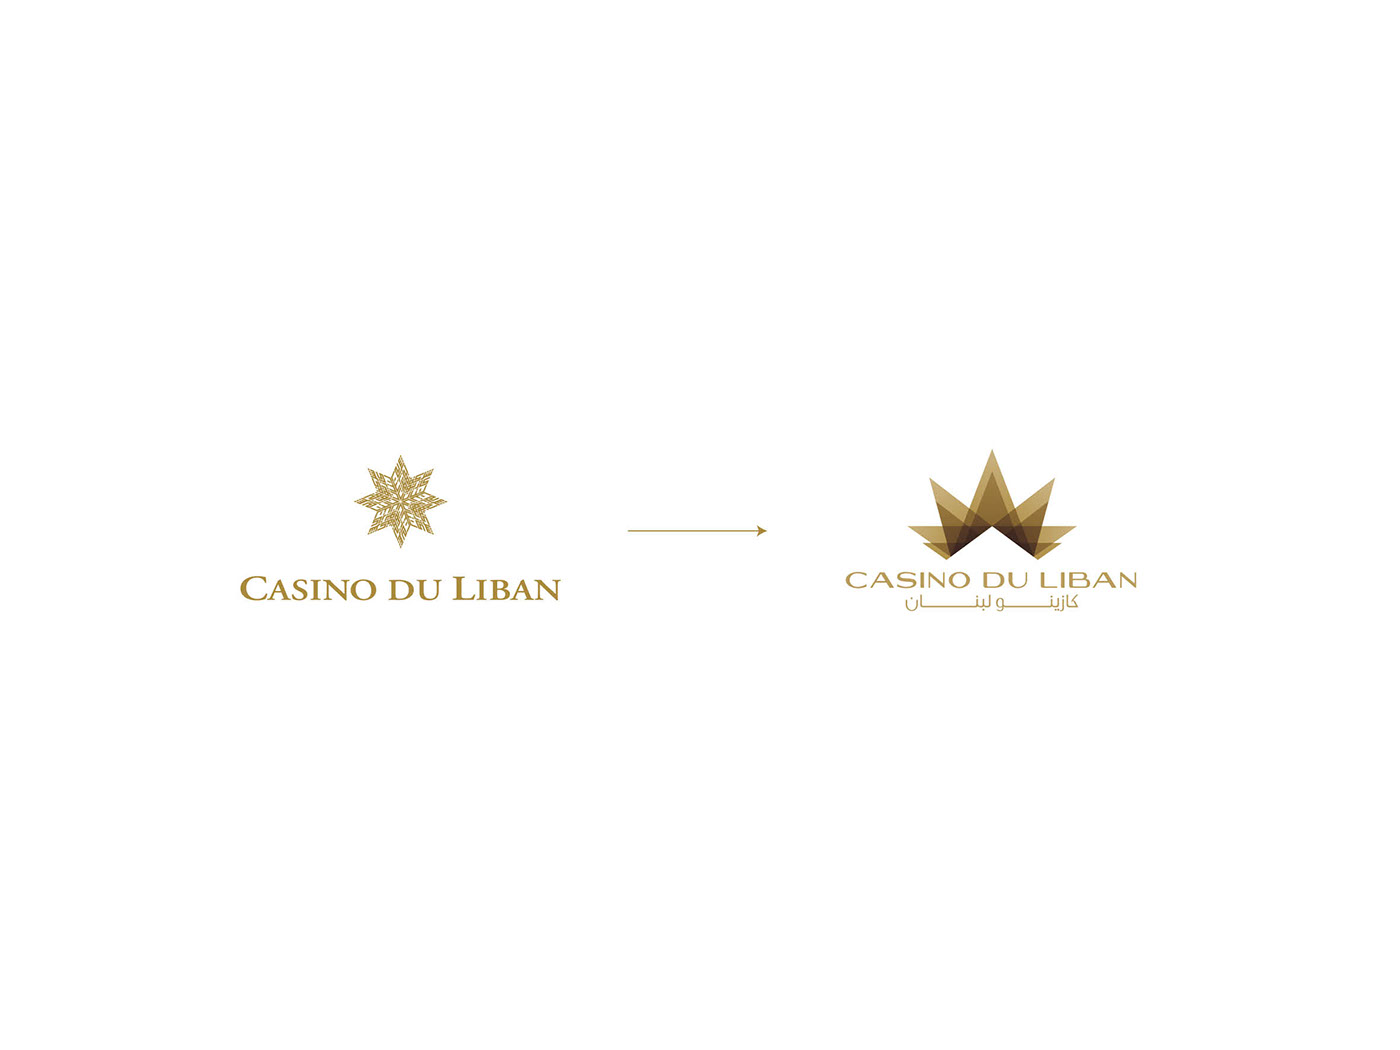 casino rebranding logo lebanon Poker roulete design star famous play